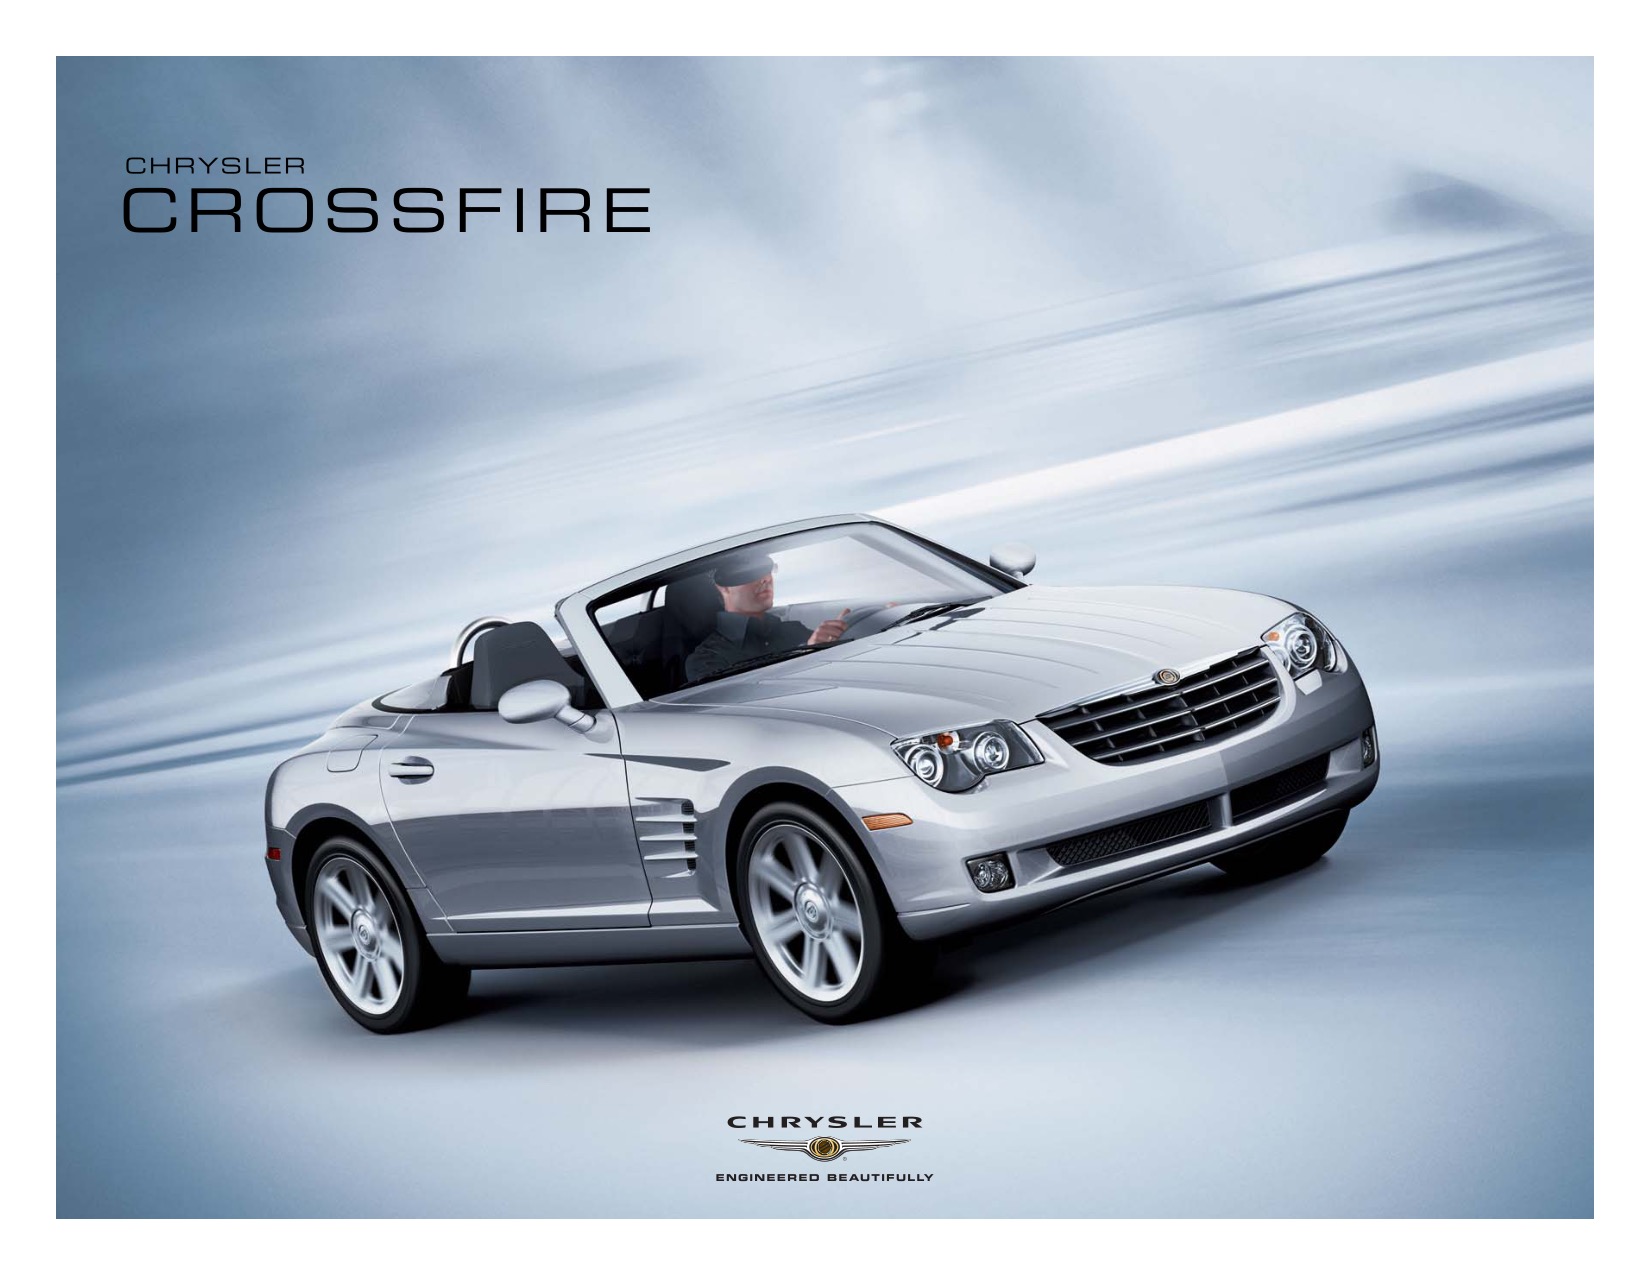 2008 Chrysler Crossfire Brochure